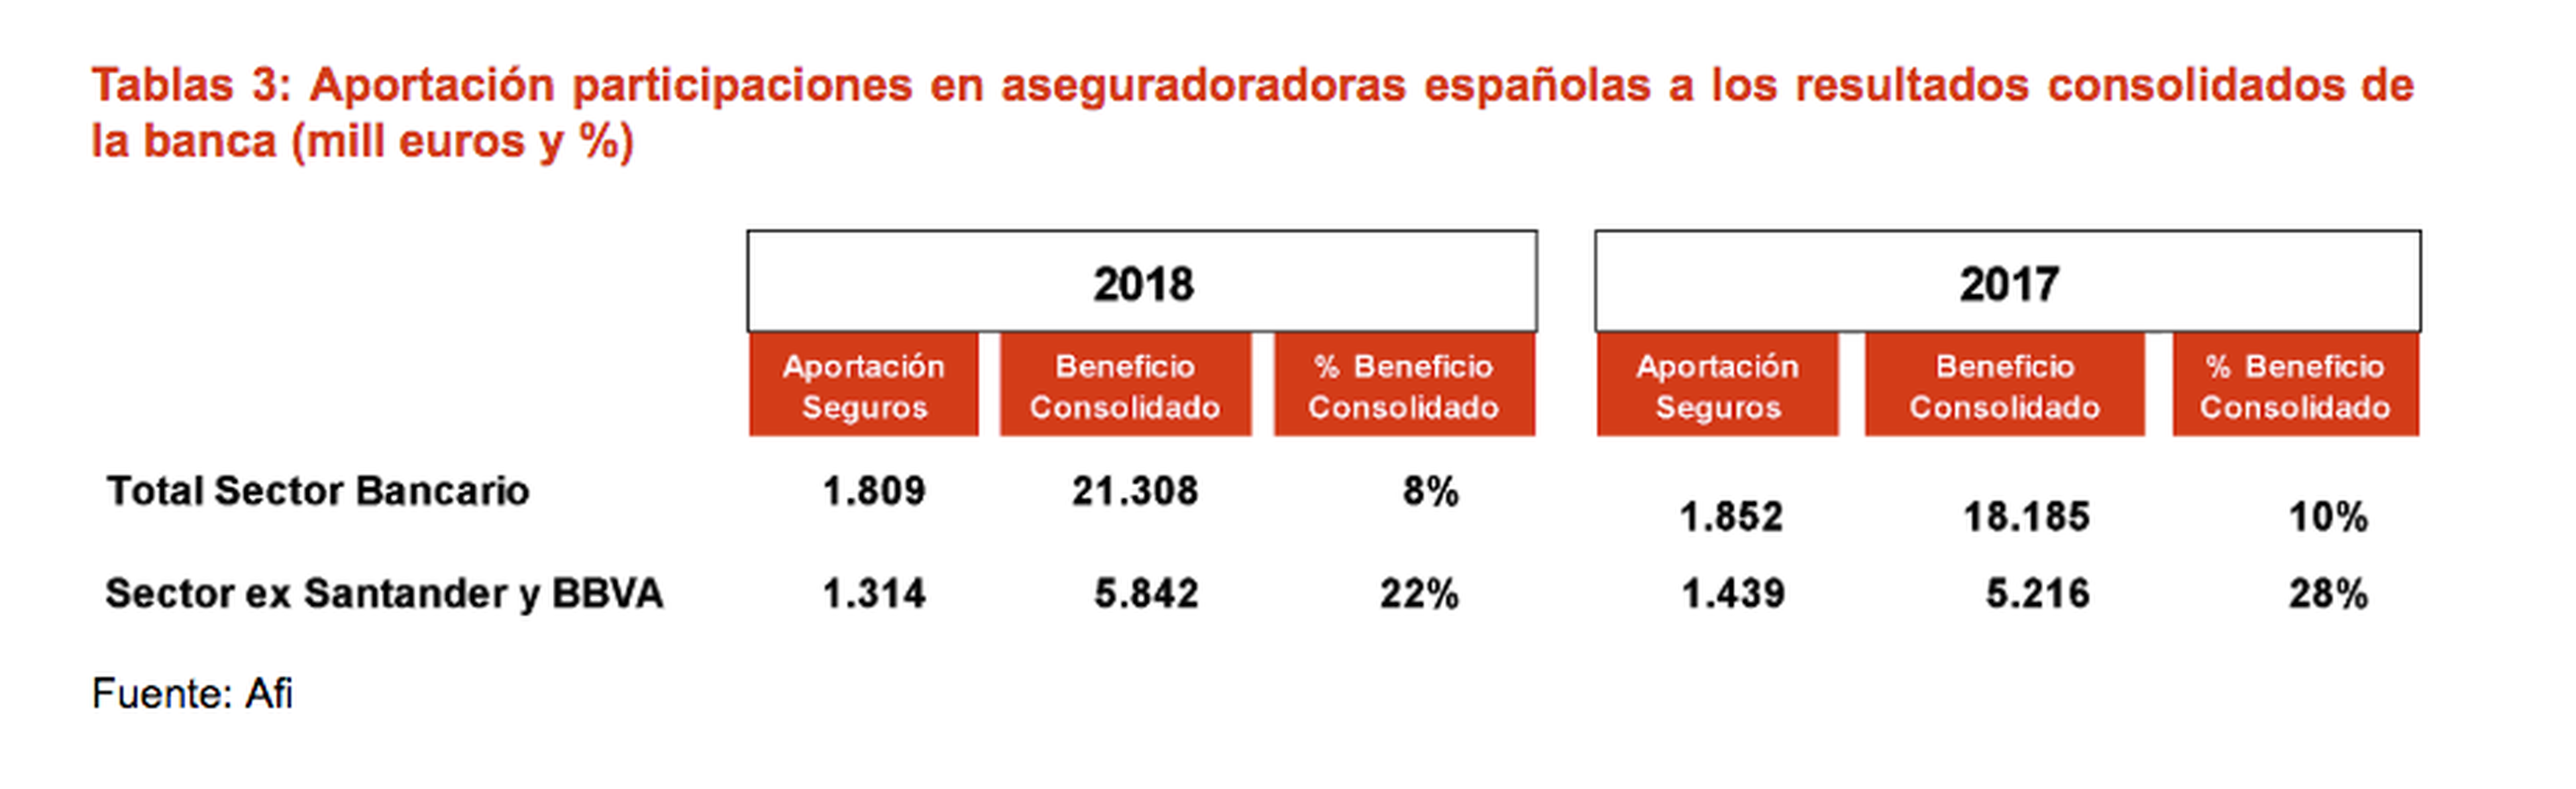 Participación de las aseguradoras en el negocio bancario español.